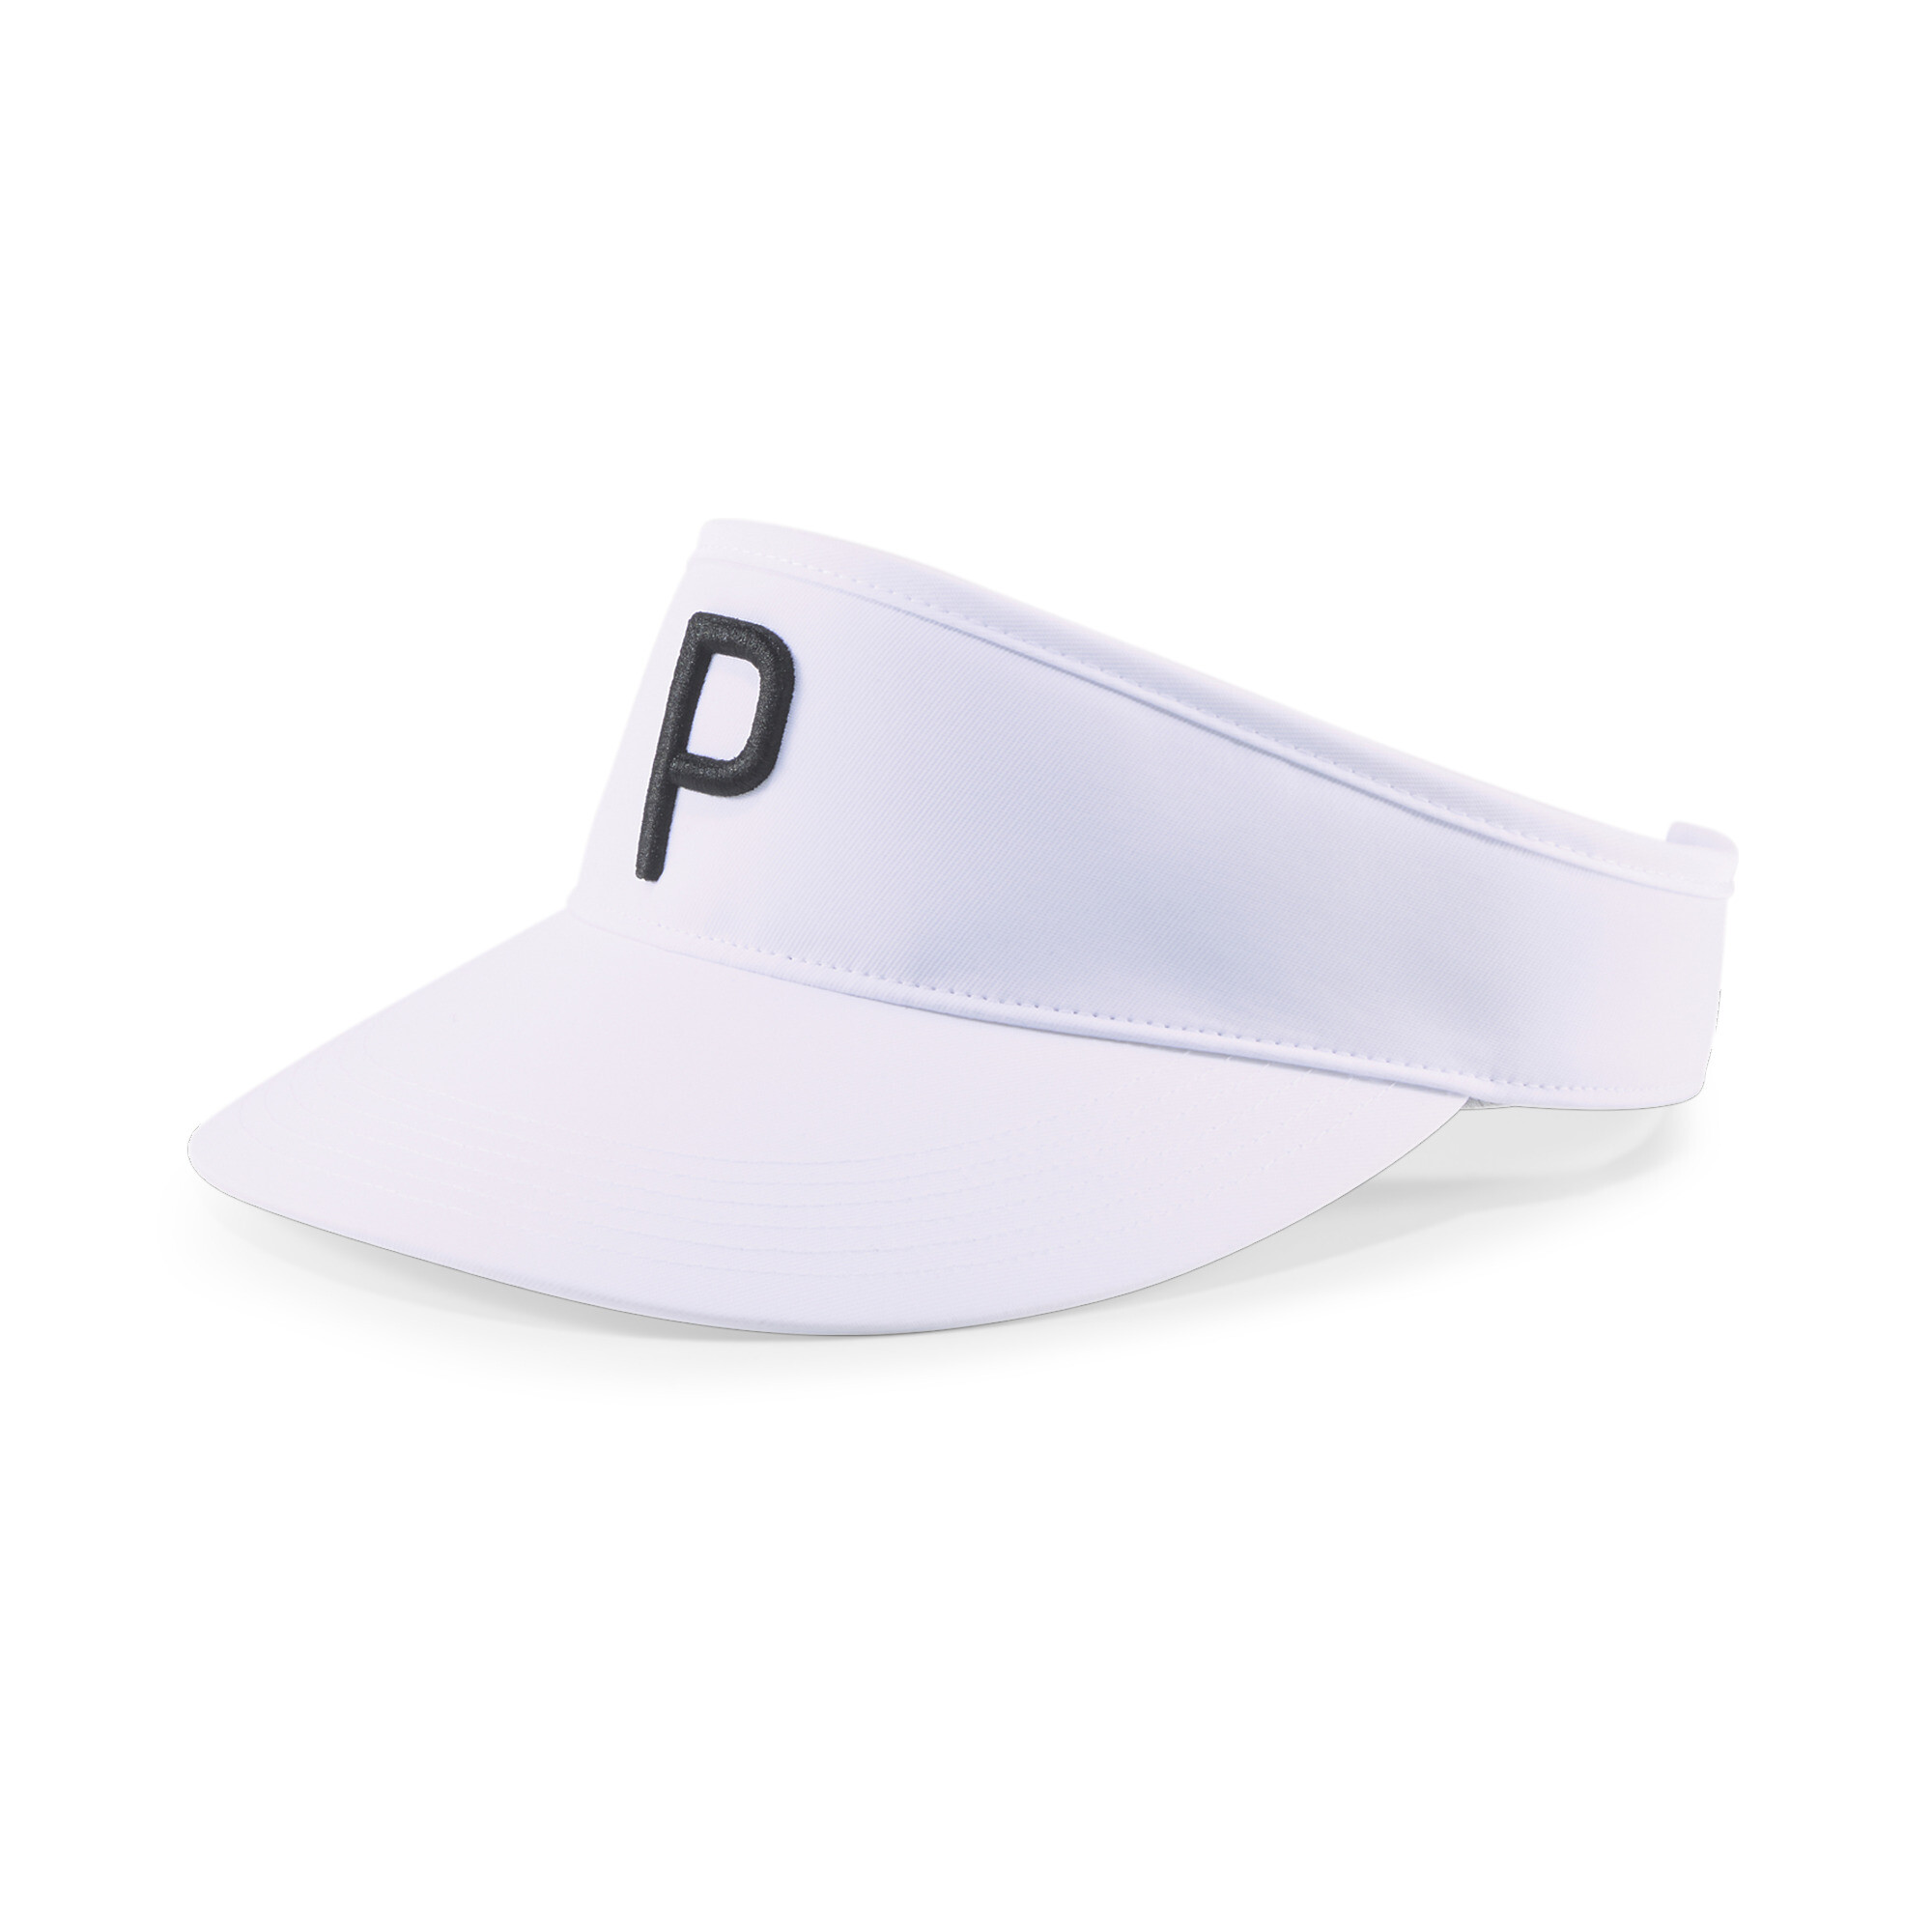 プーマ メンズ ゴルフ P アジャスタブル バイザー メンズ Bright White-Puma Black ｜PUMA.comの画像